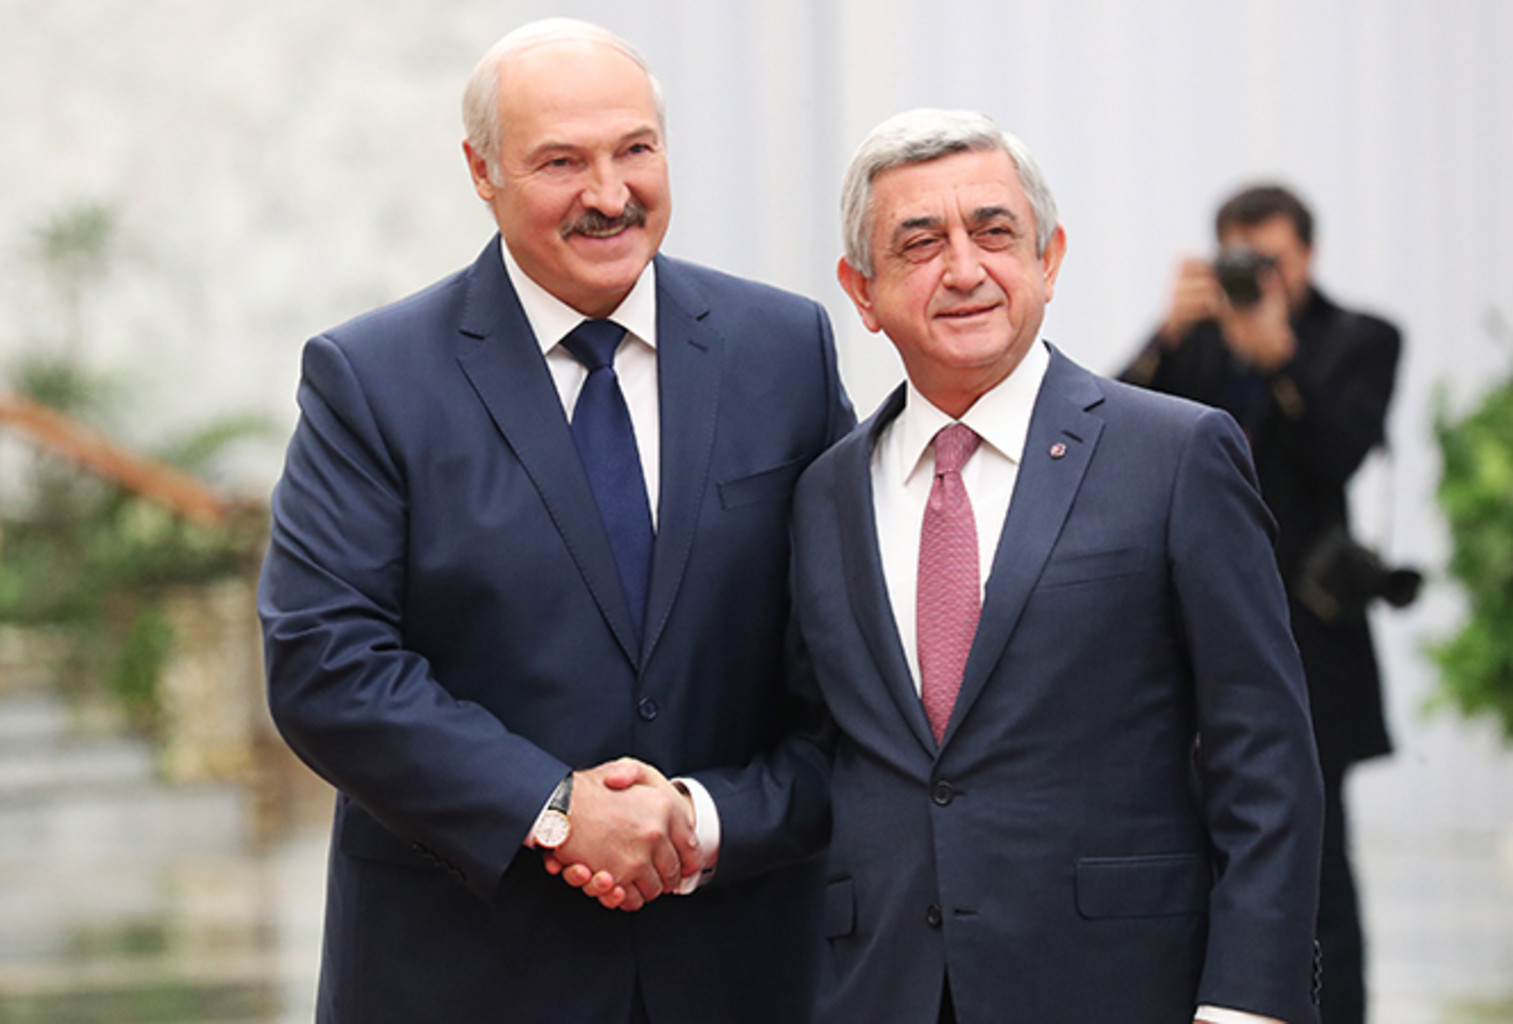 "Алиев предлагал пять миллиардов за Карабах". В СМИ появился разговор лидеров Армении и Беларуси за закрытыми дверями